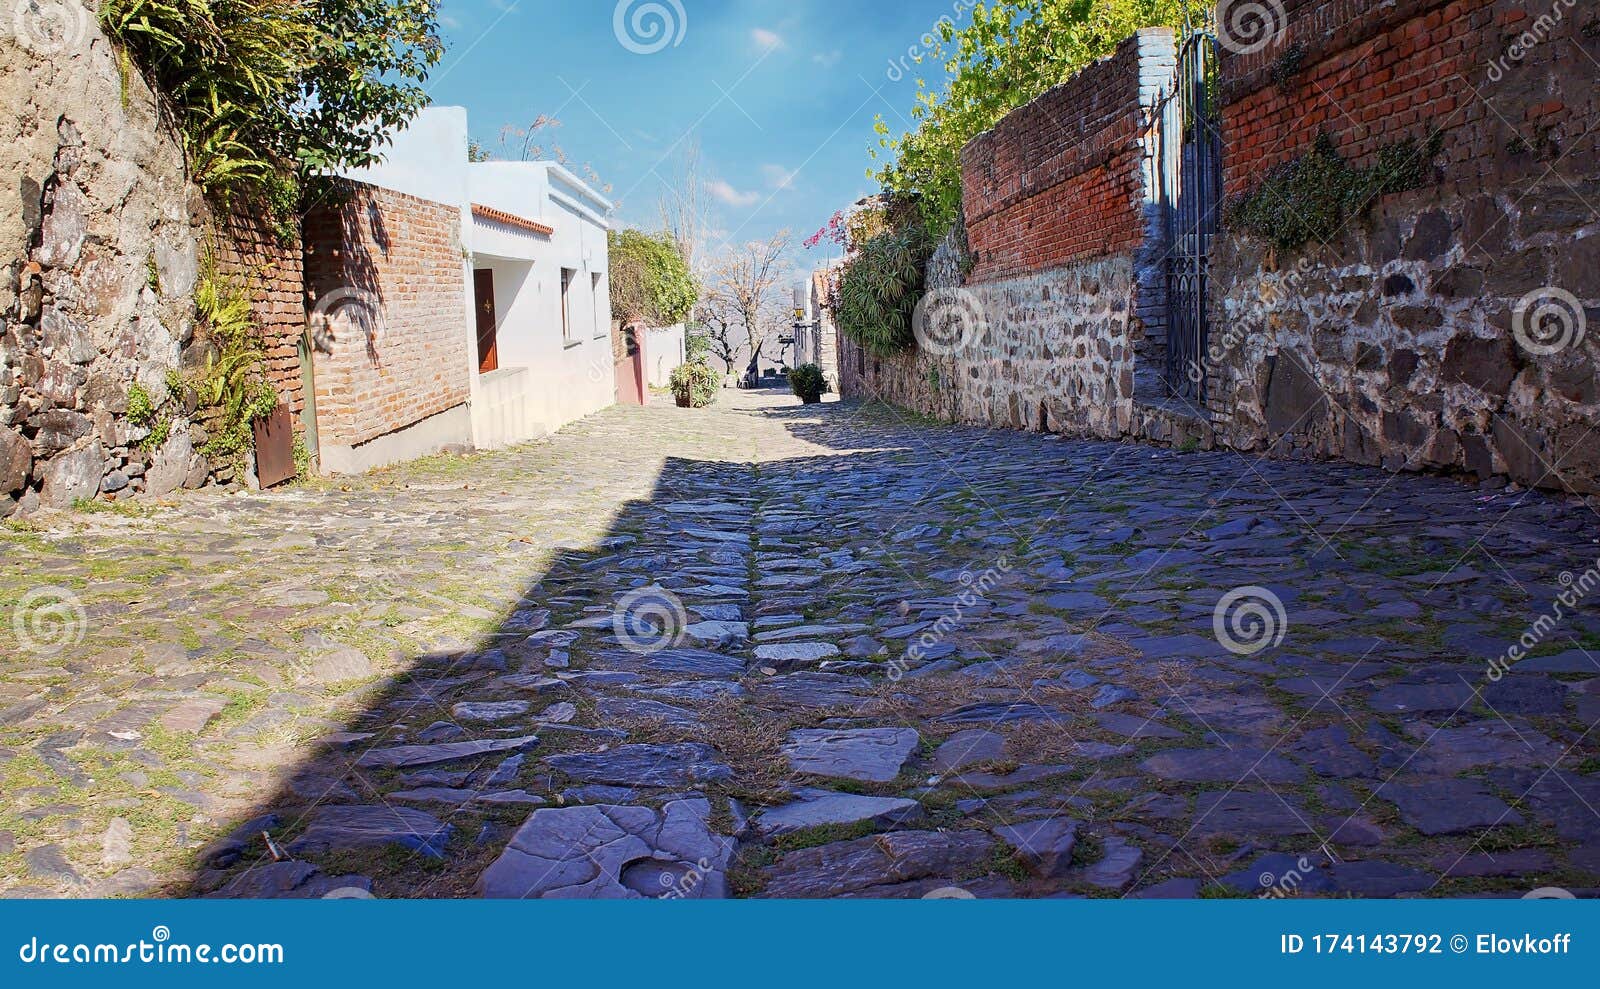 streets of colonia del sacramento in historic center barrio historico